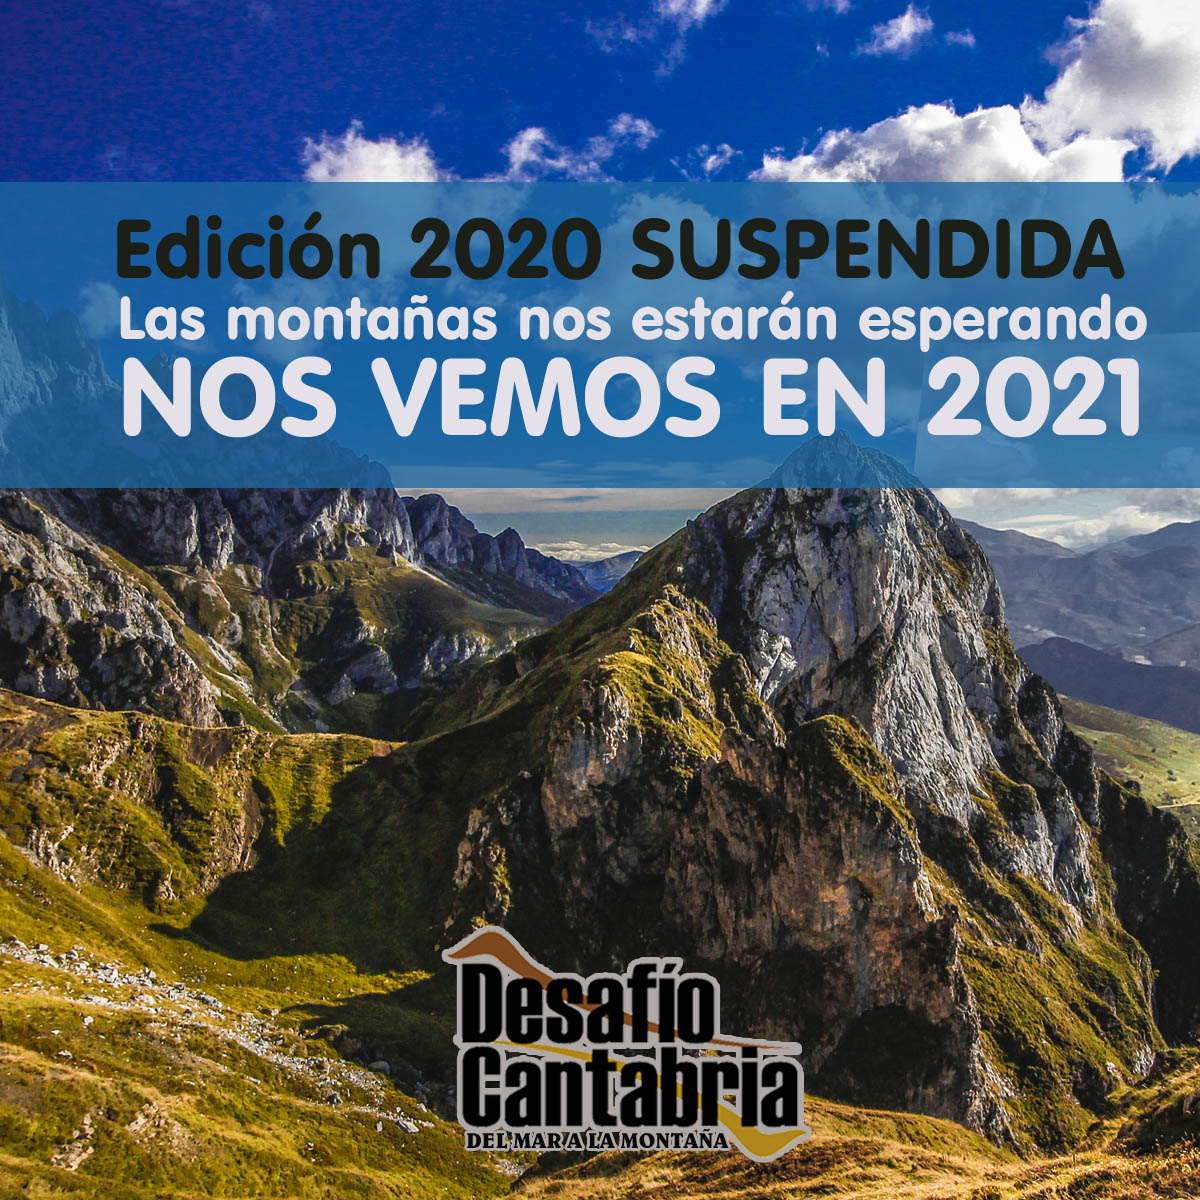 Comunicado suspensión Desafío Cantabria 2020 por el COVID19